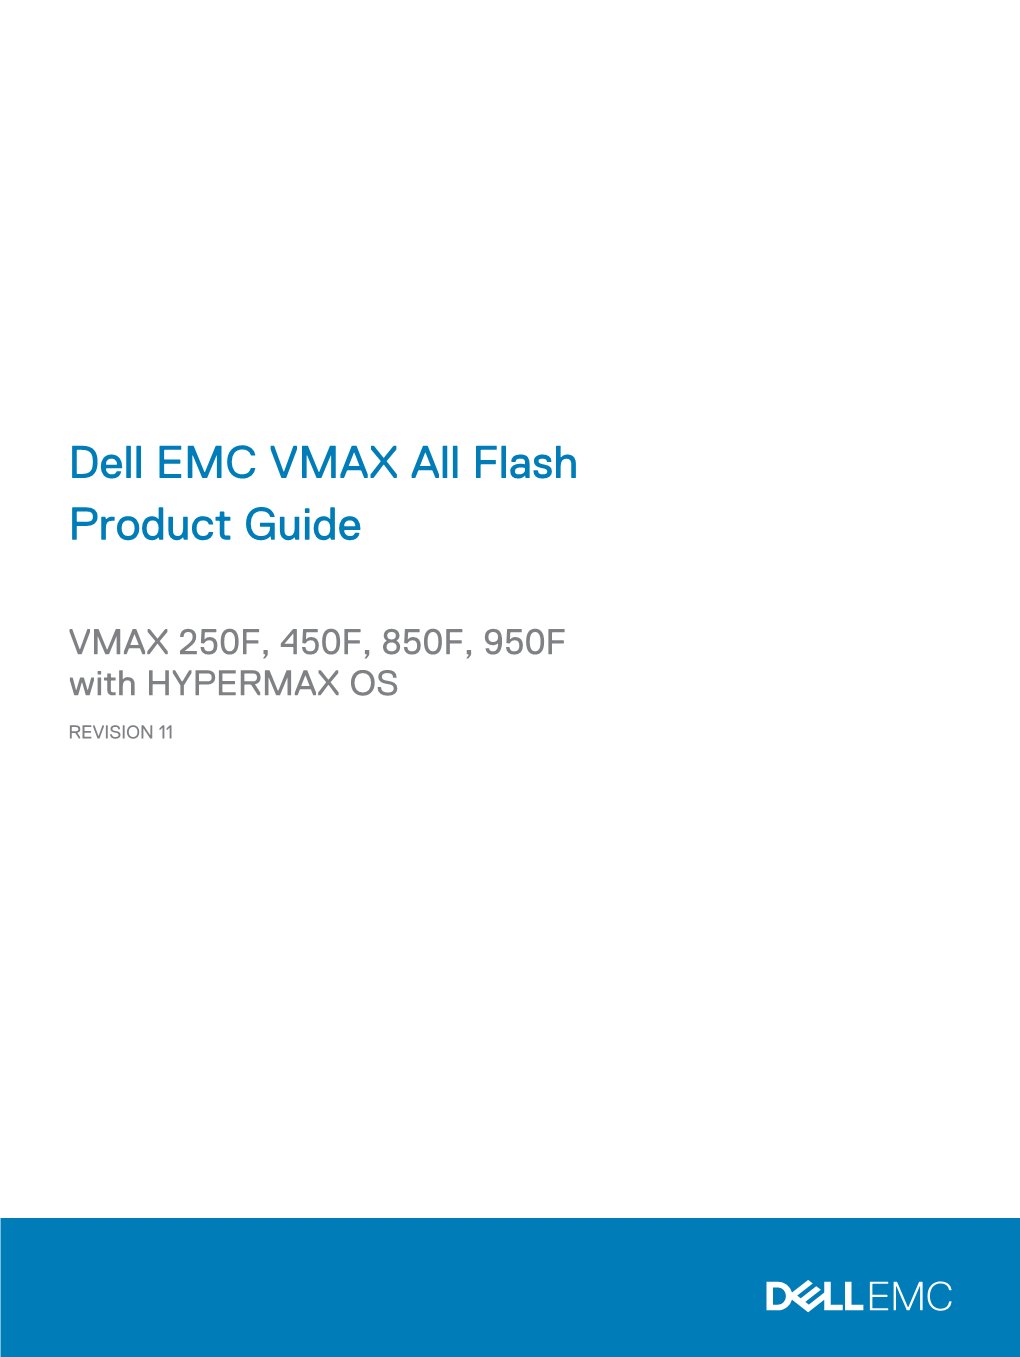 Dell EMC VMAX All-Flash Product Guide